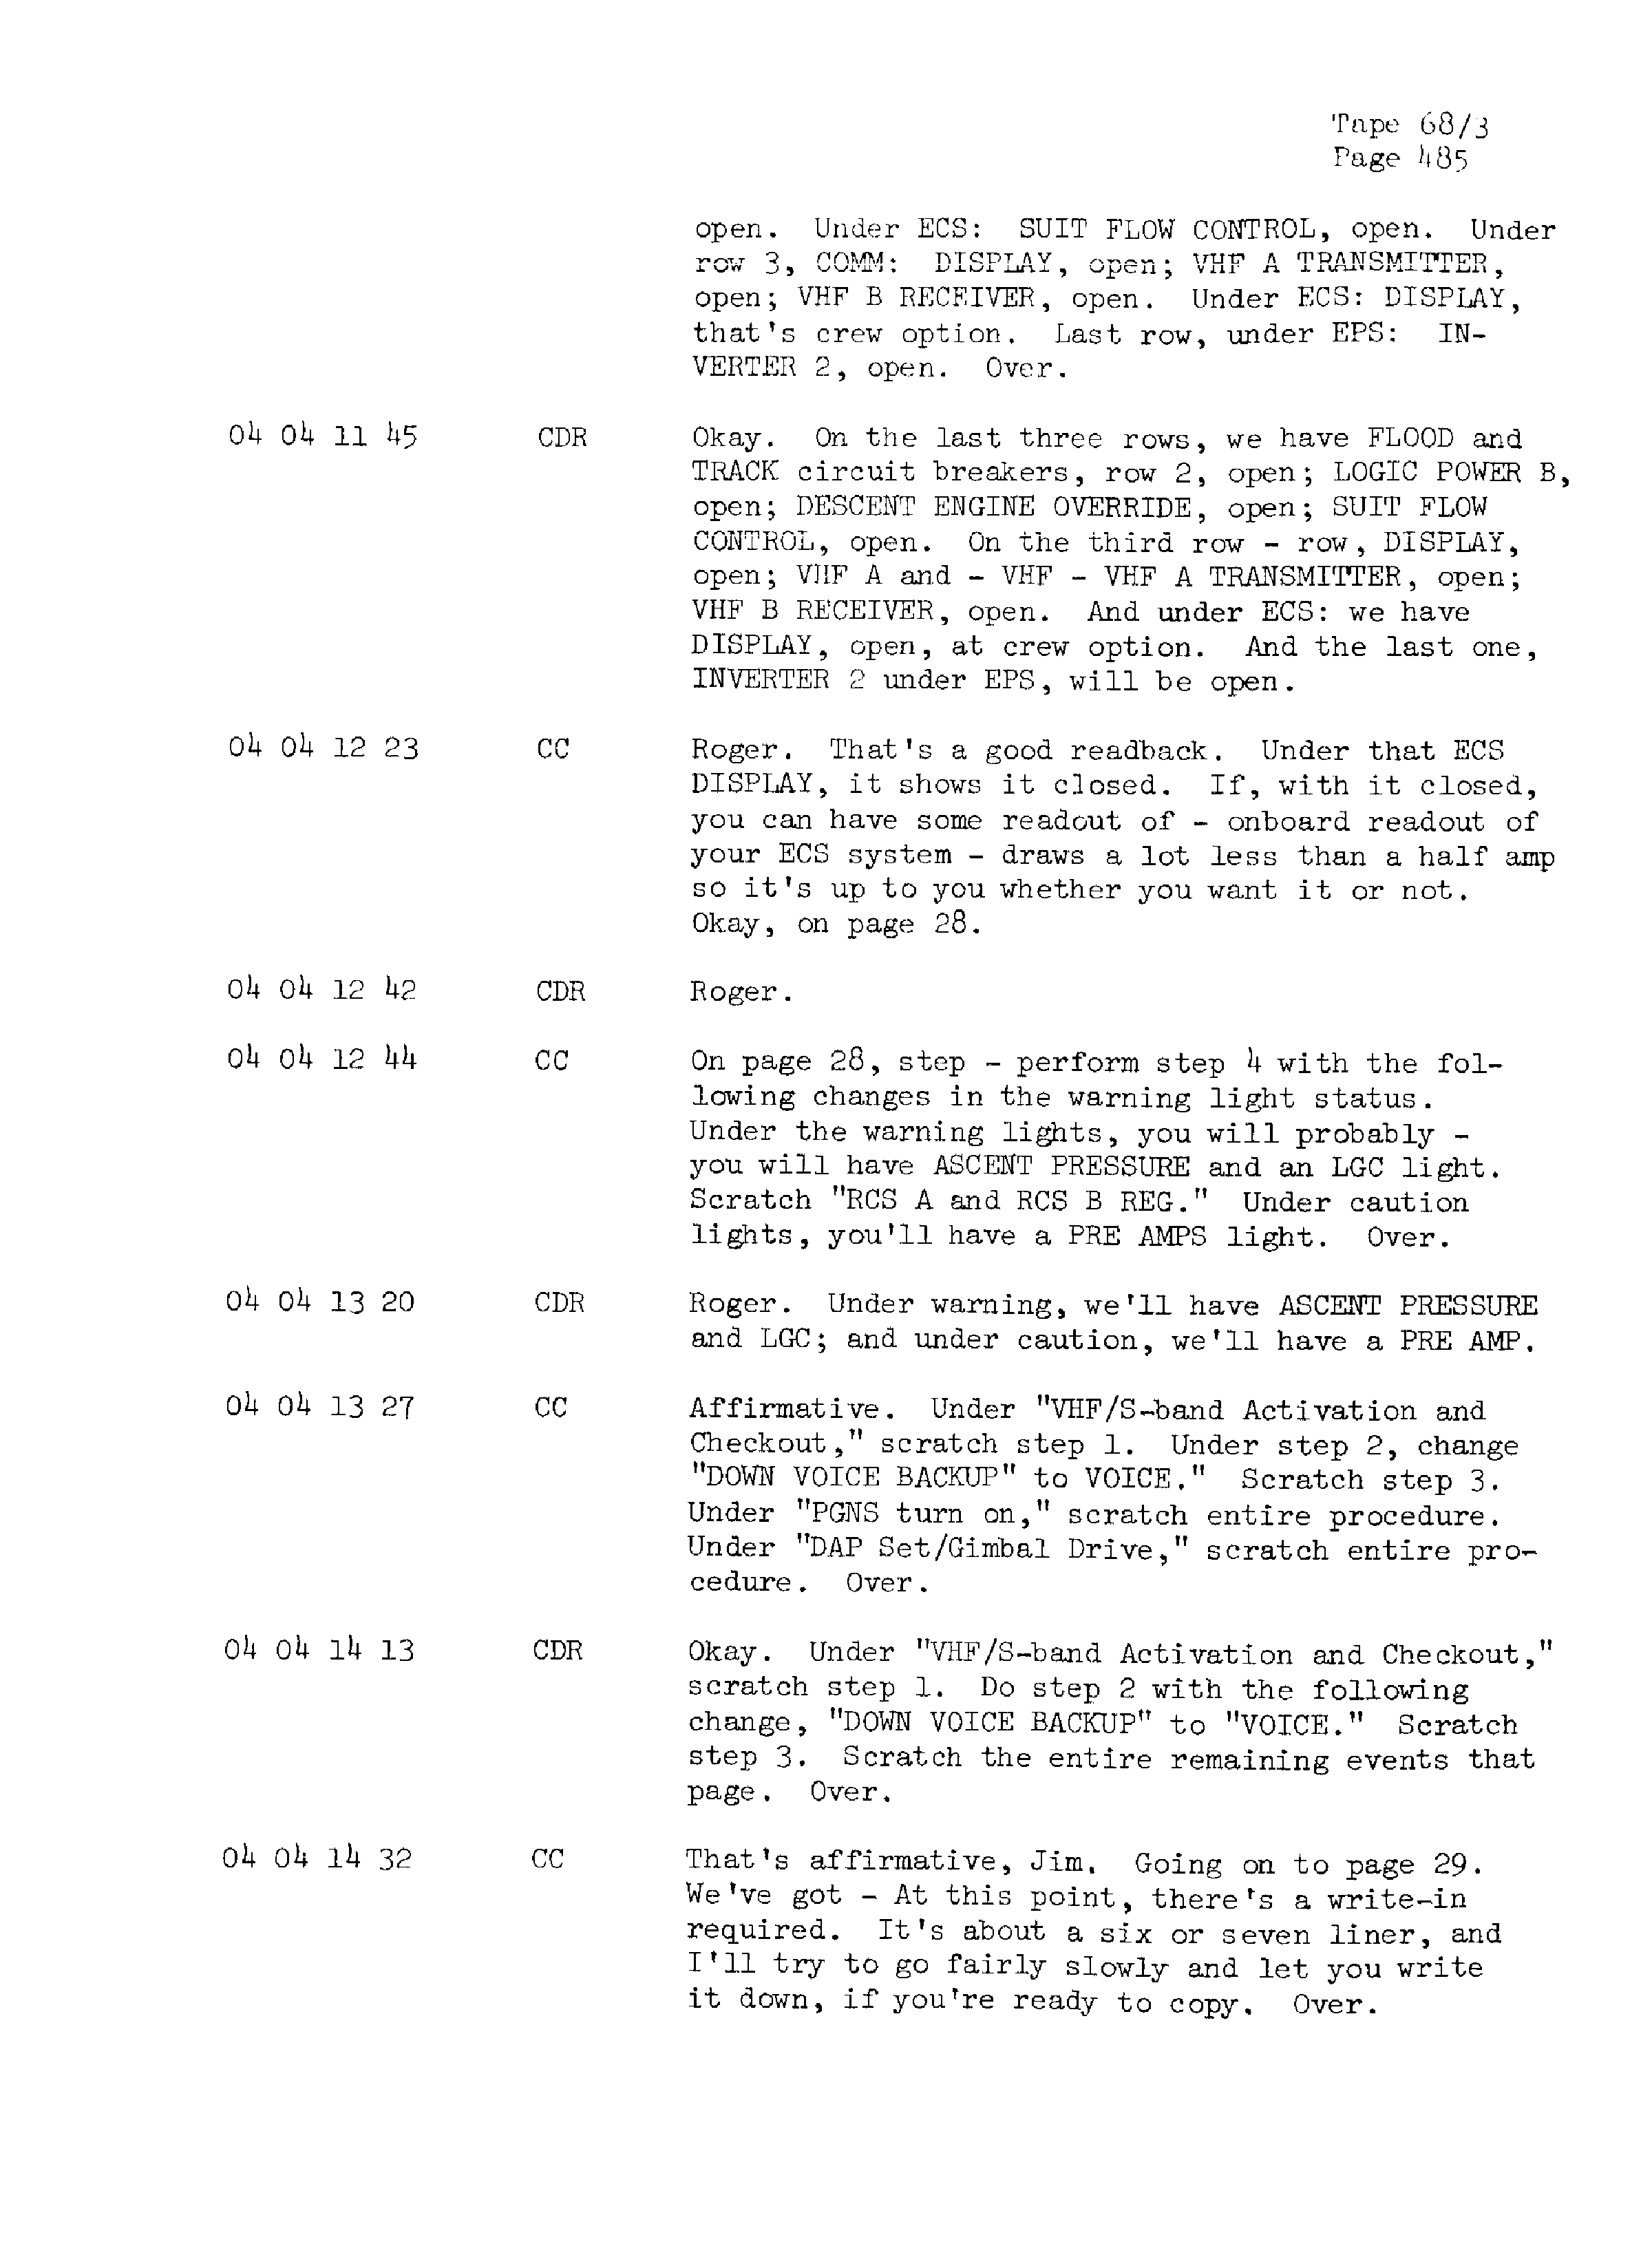 Page 492 of Apollo 13’s original transcript